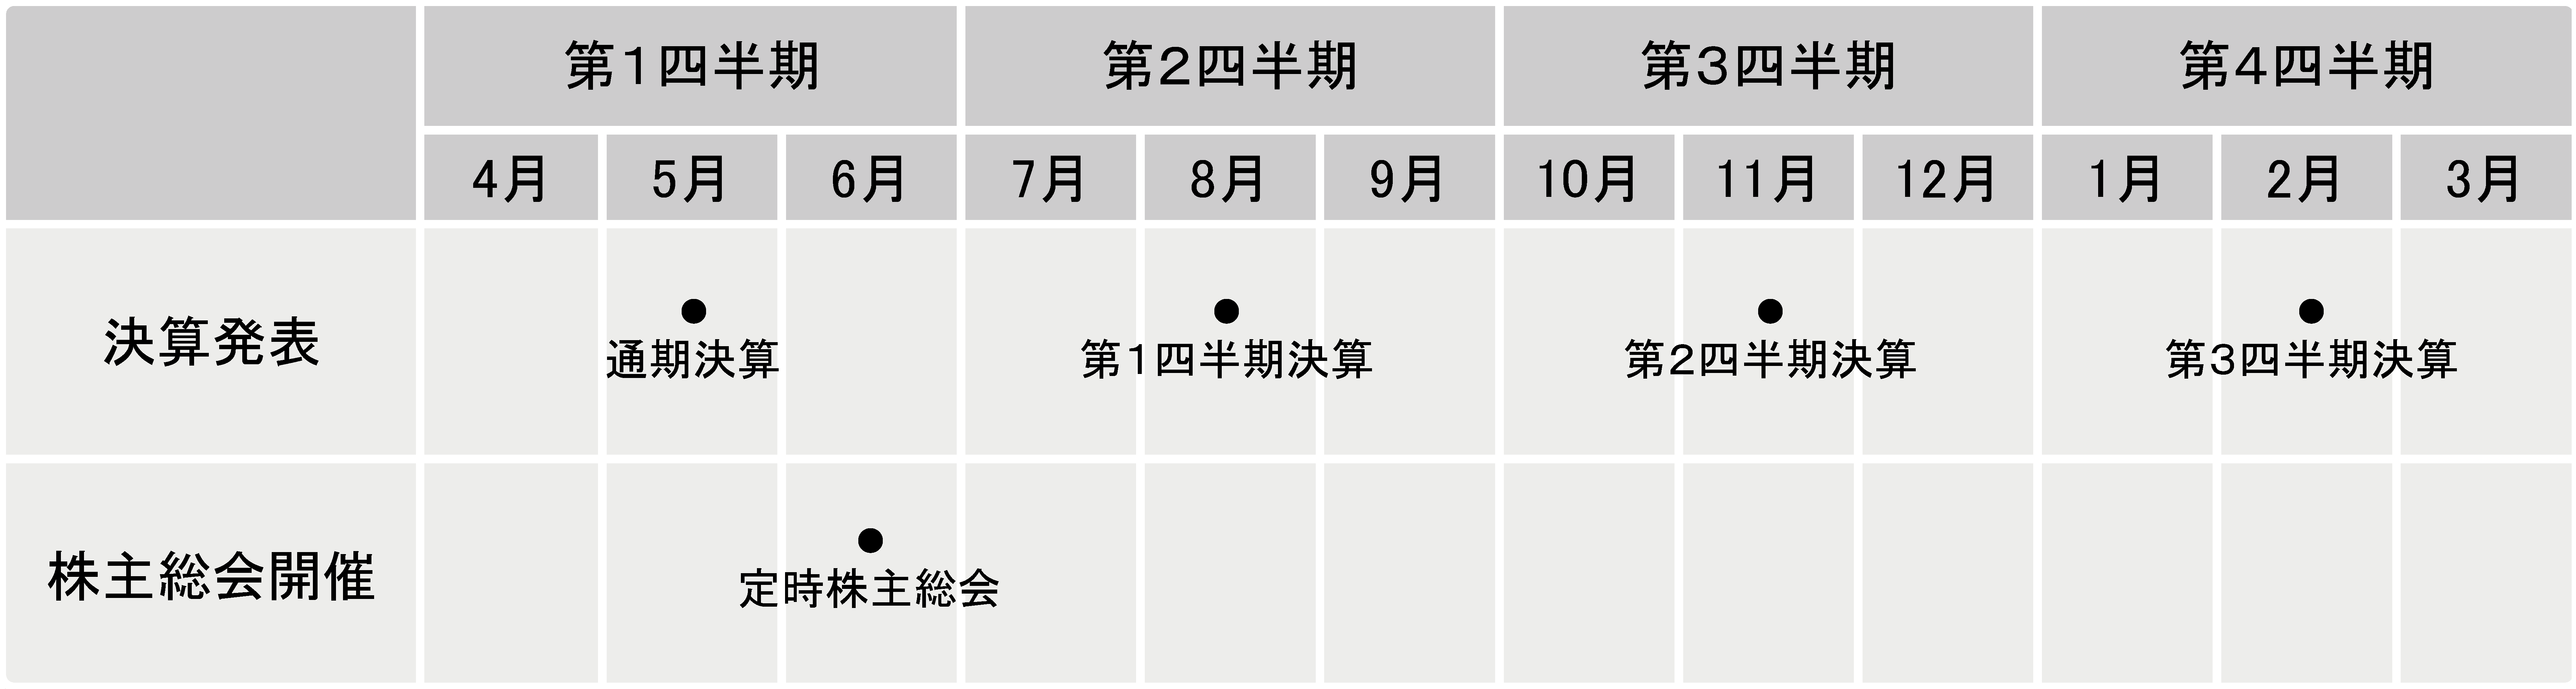 IRカレンダー 2018年